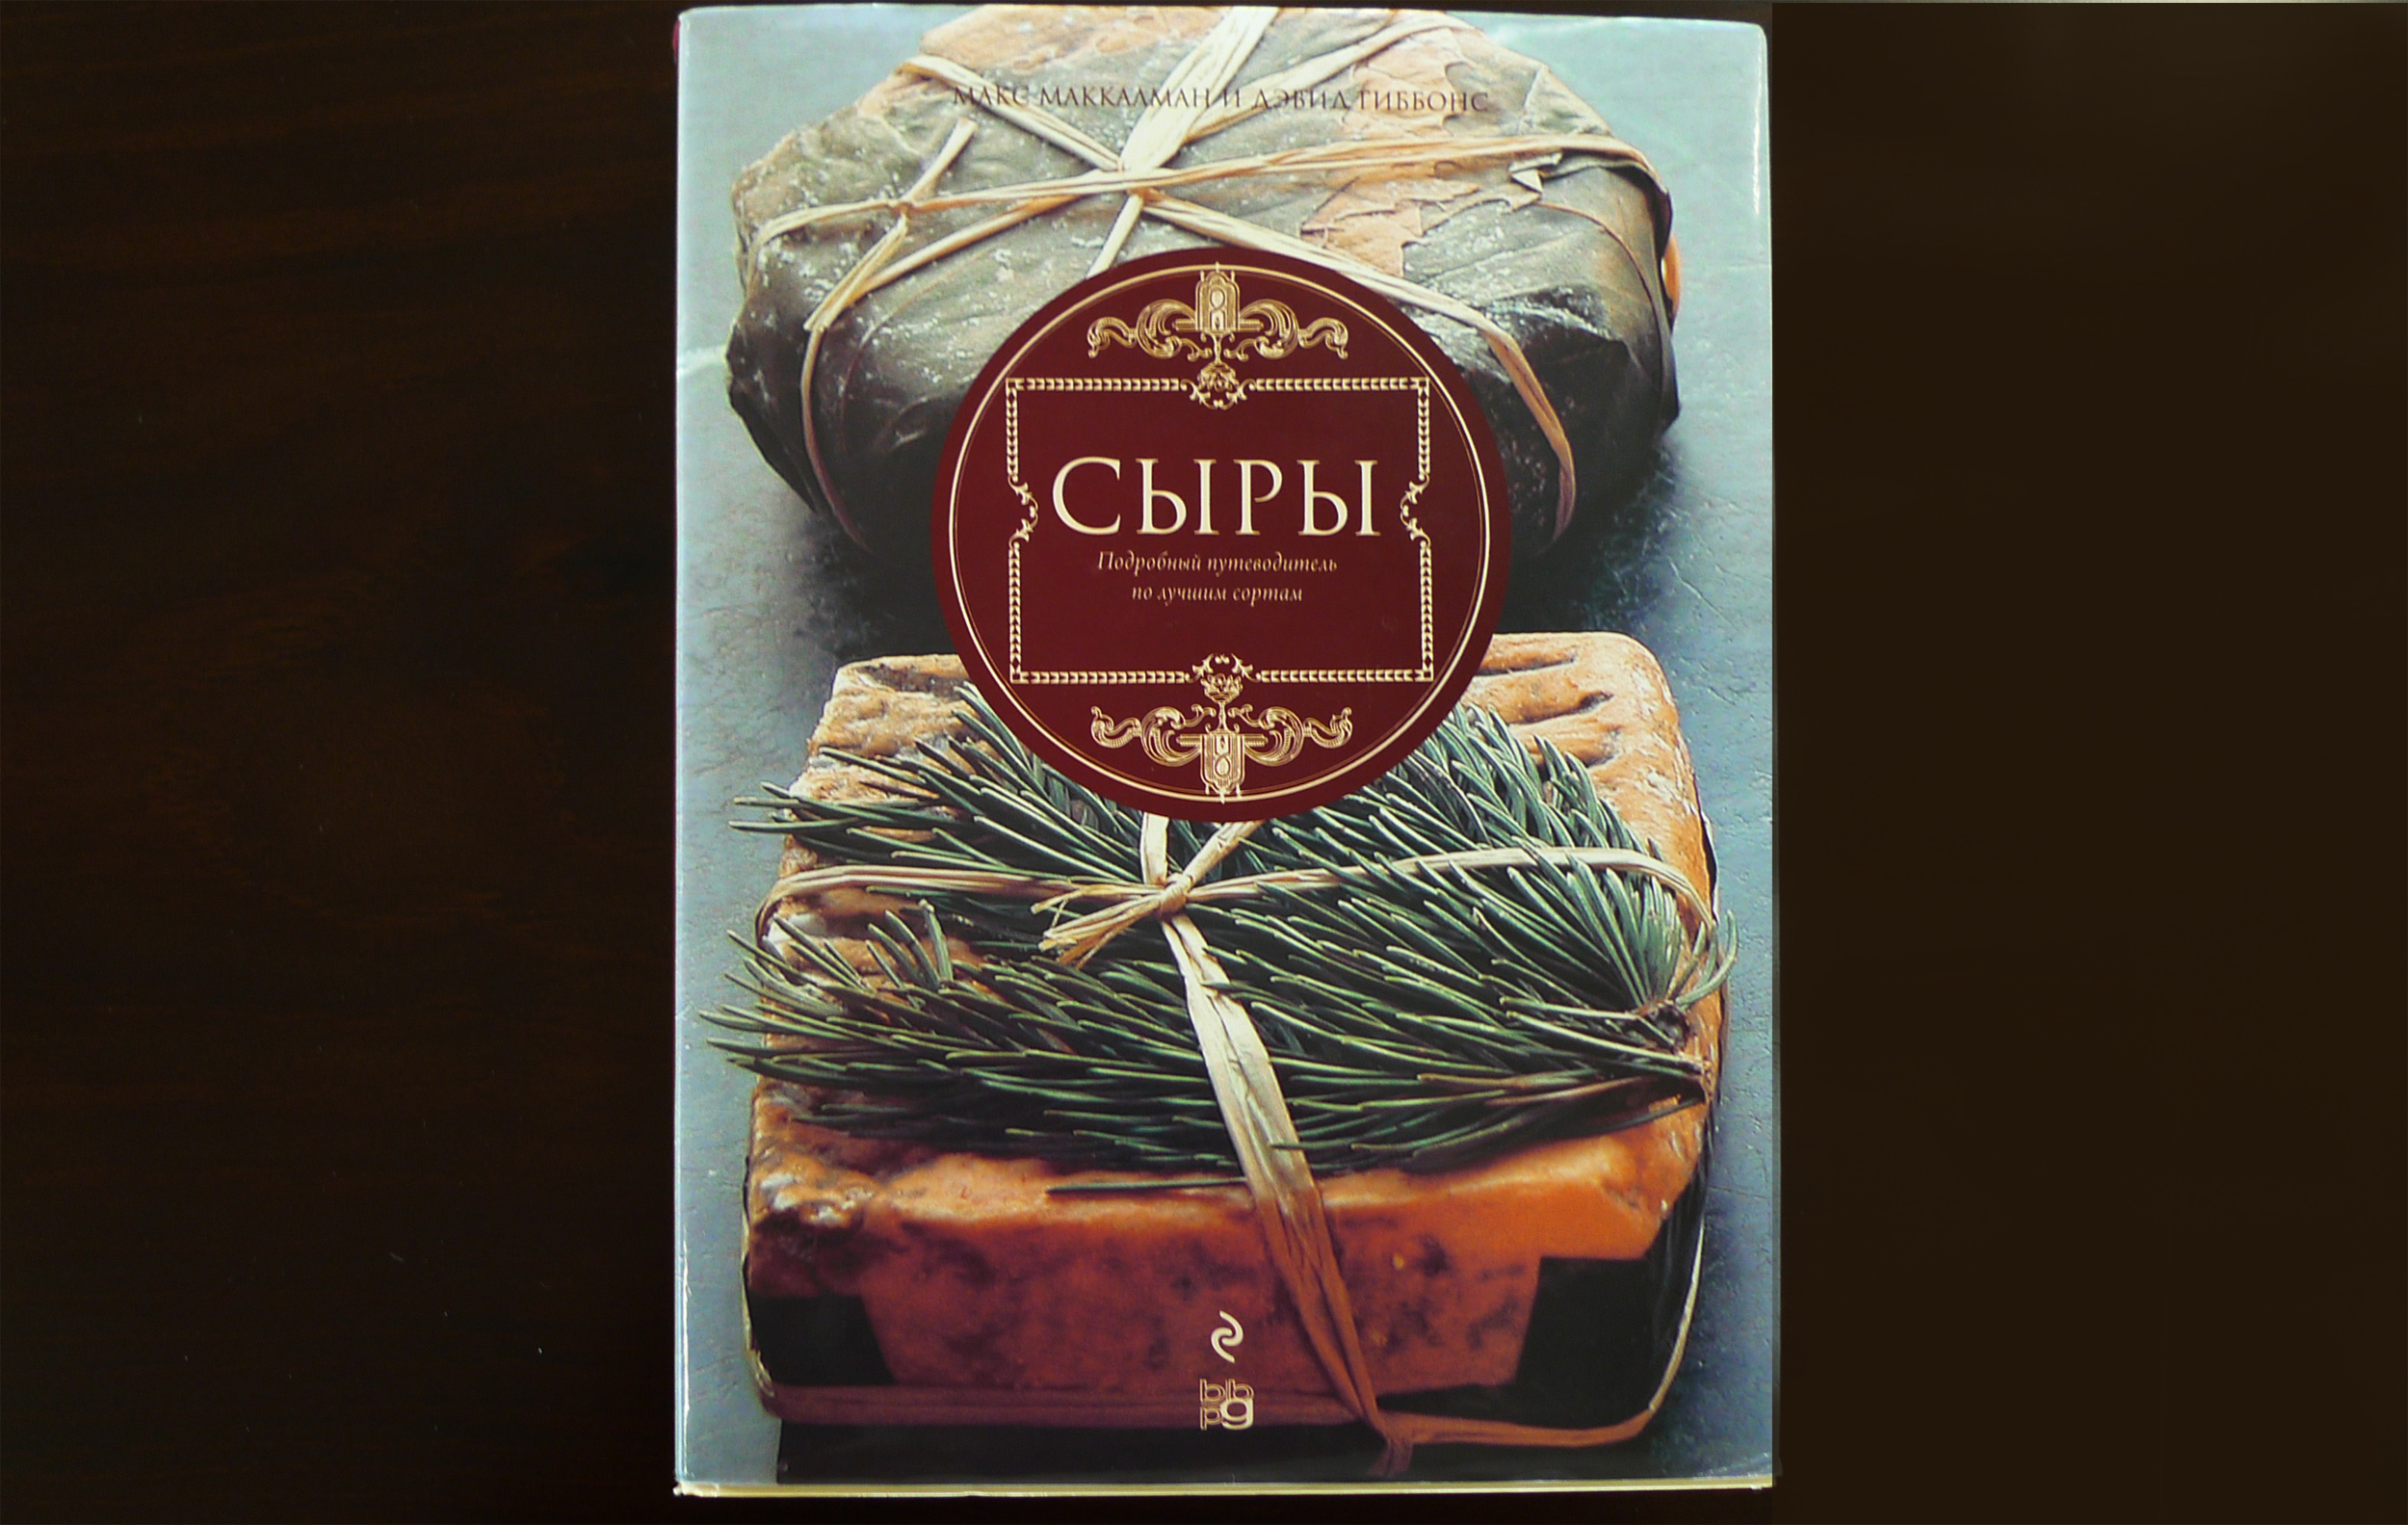 Livro sobre queijos em russo